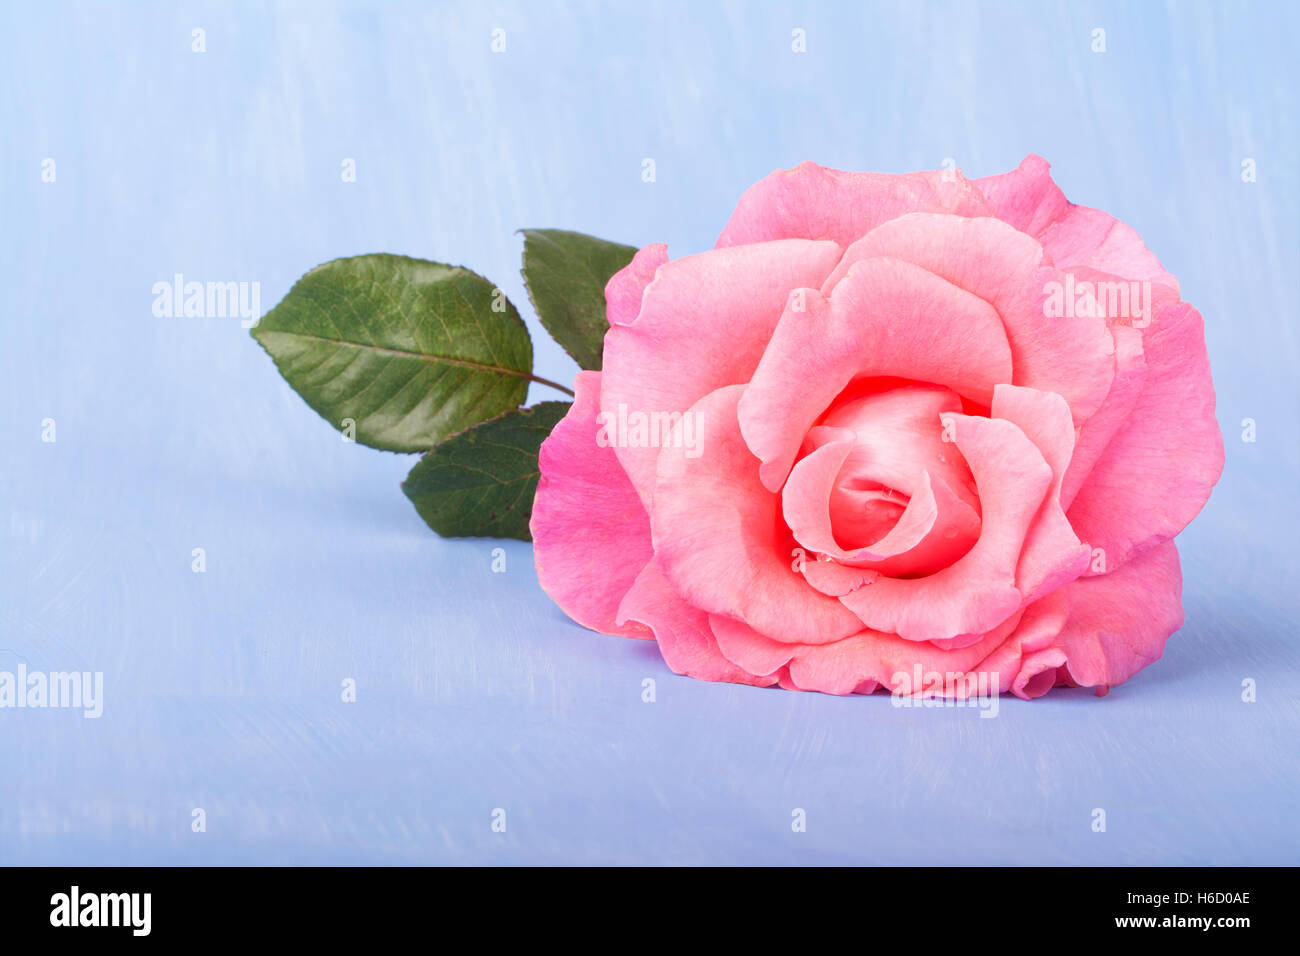 Große rosa Rose auf einem lackierten hellblauen Hintergrund, mit Textfreiraum Stockfoto